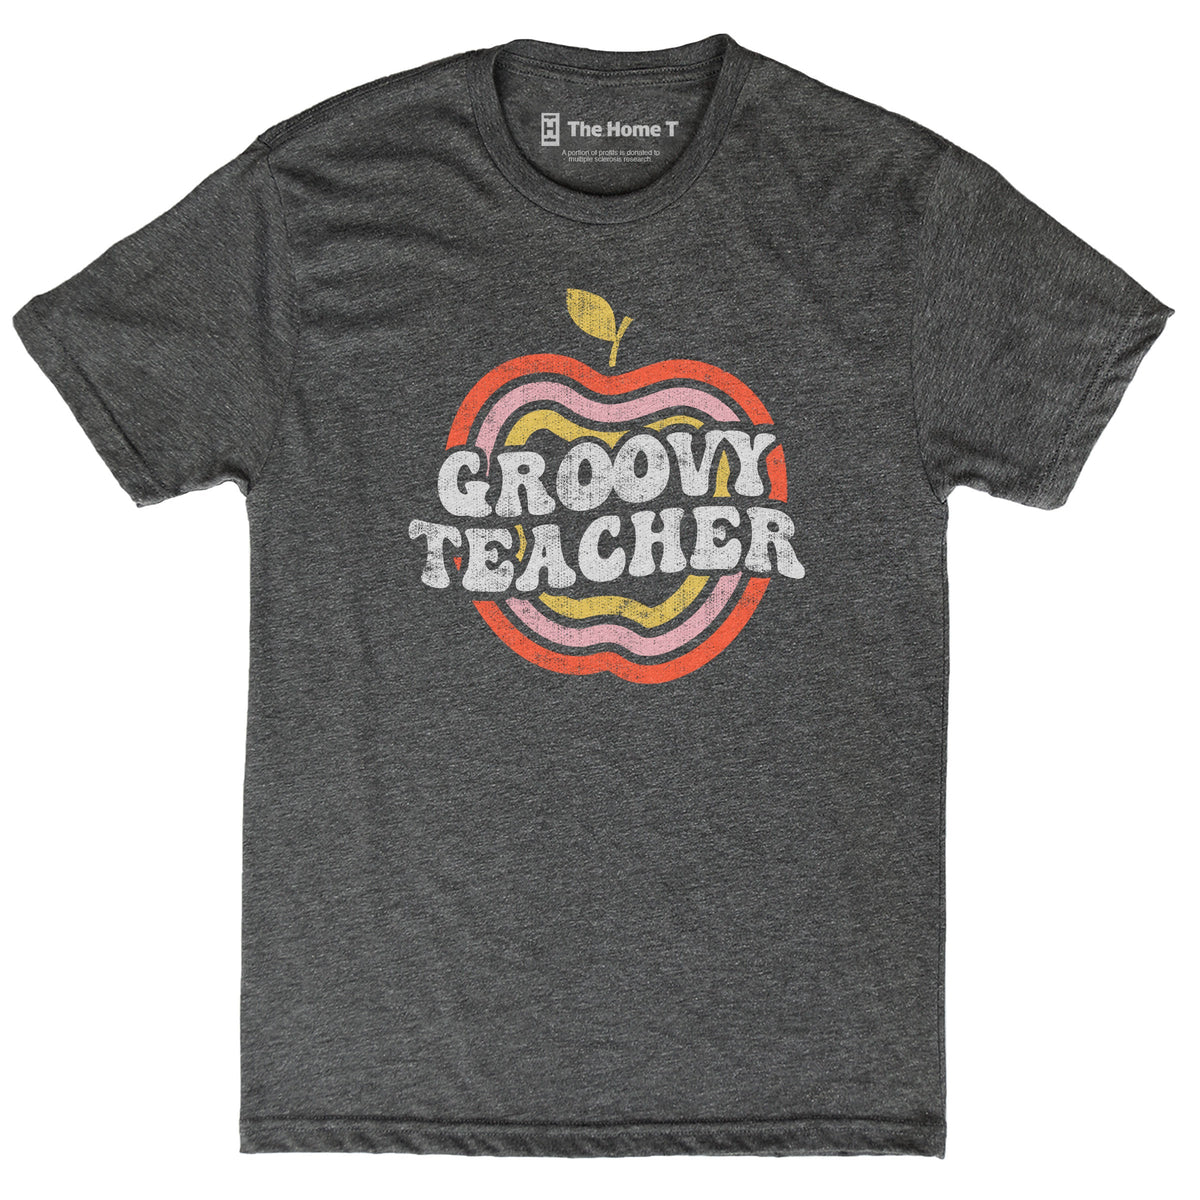 Groovy Teacher